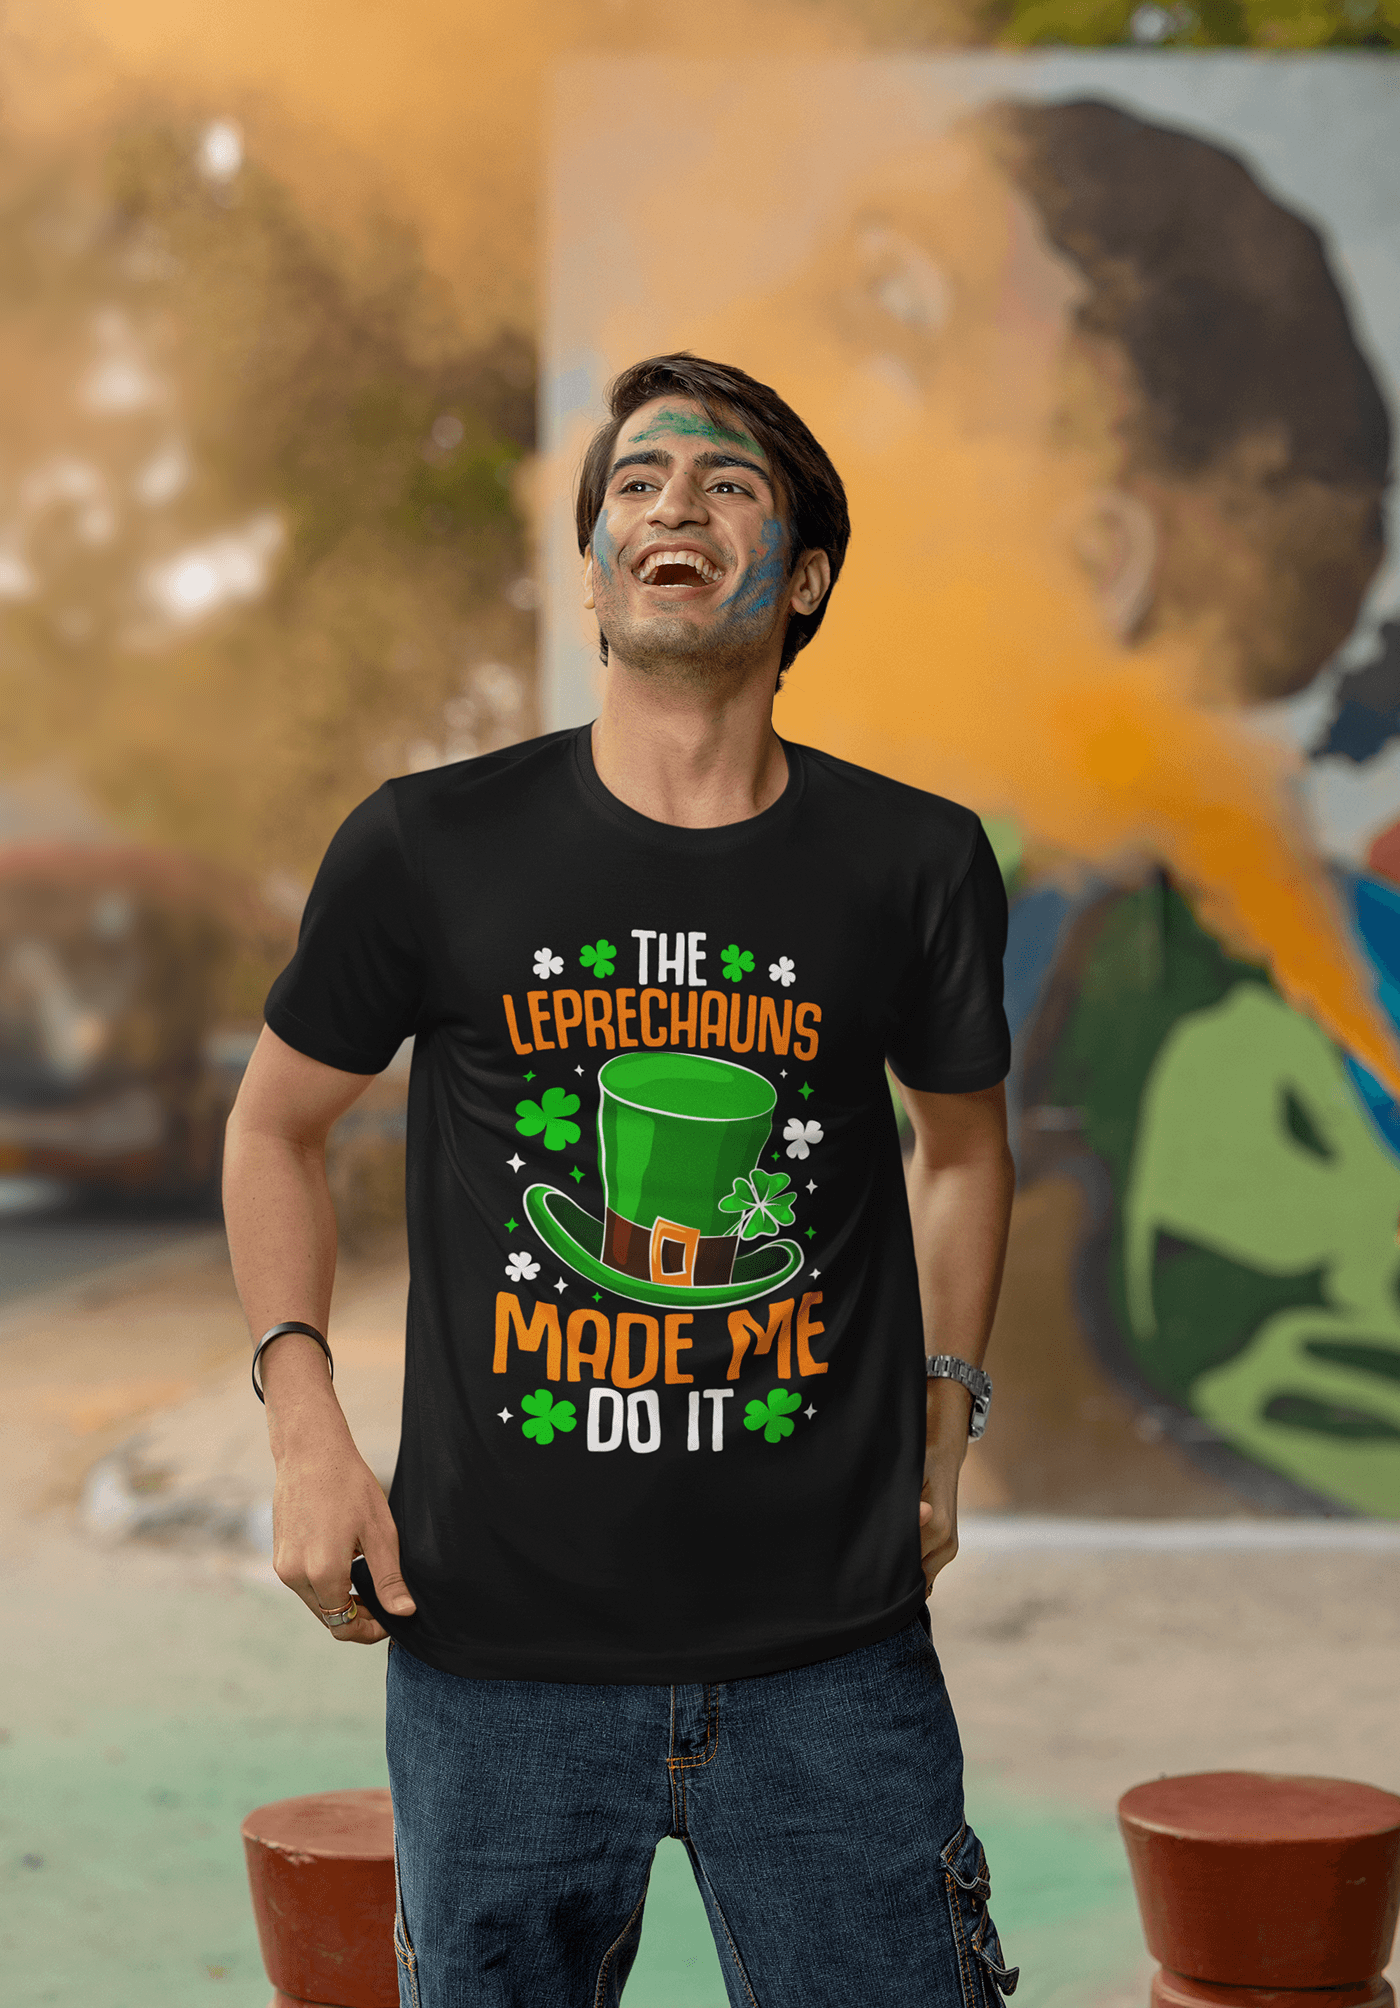 St. Patrick's Day T-shirt Design Bundle, St. Patrick's Day Typography T-shirt design